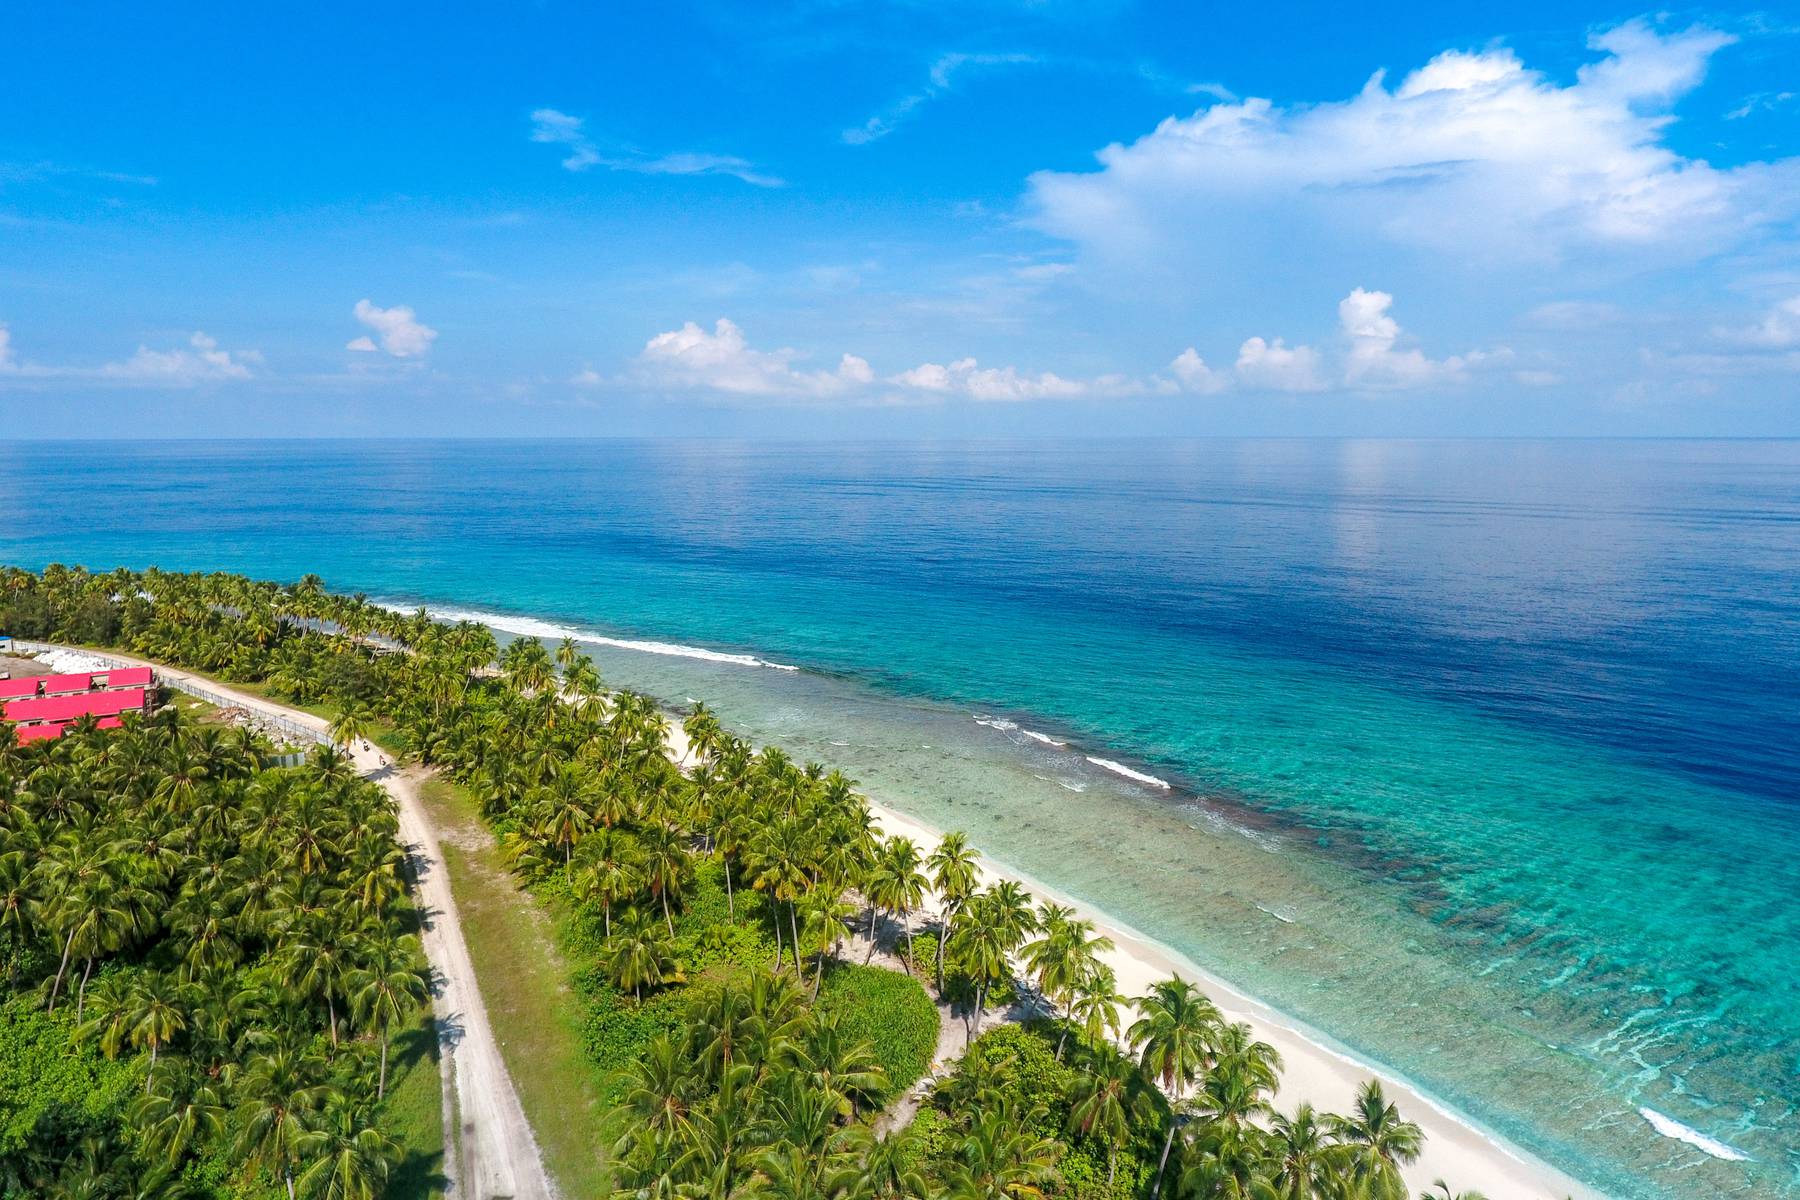 Resan avslutan på ön Maafushi